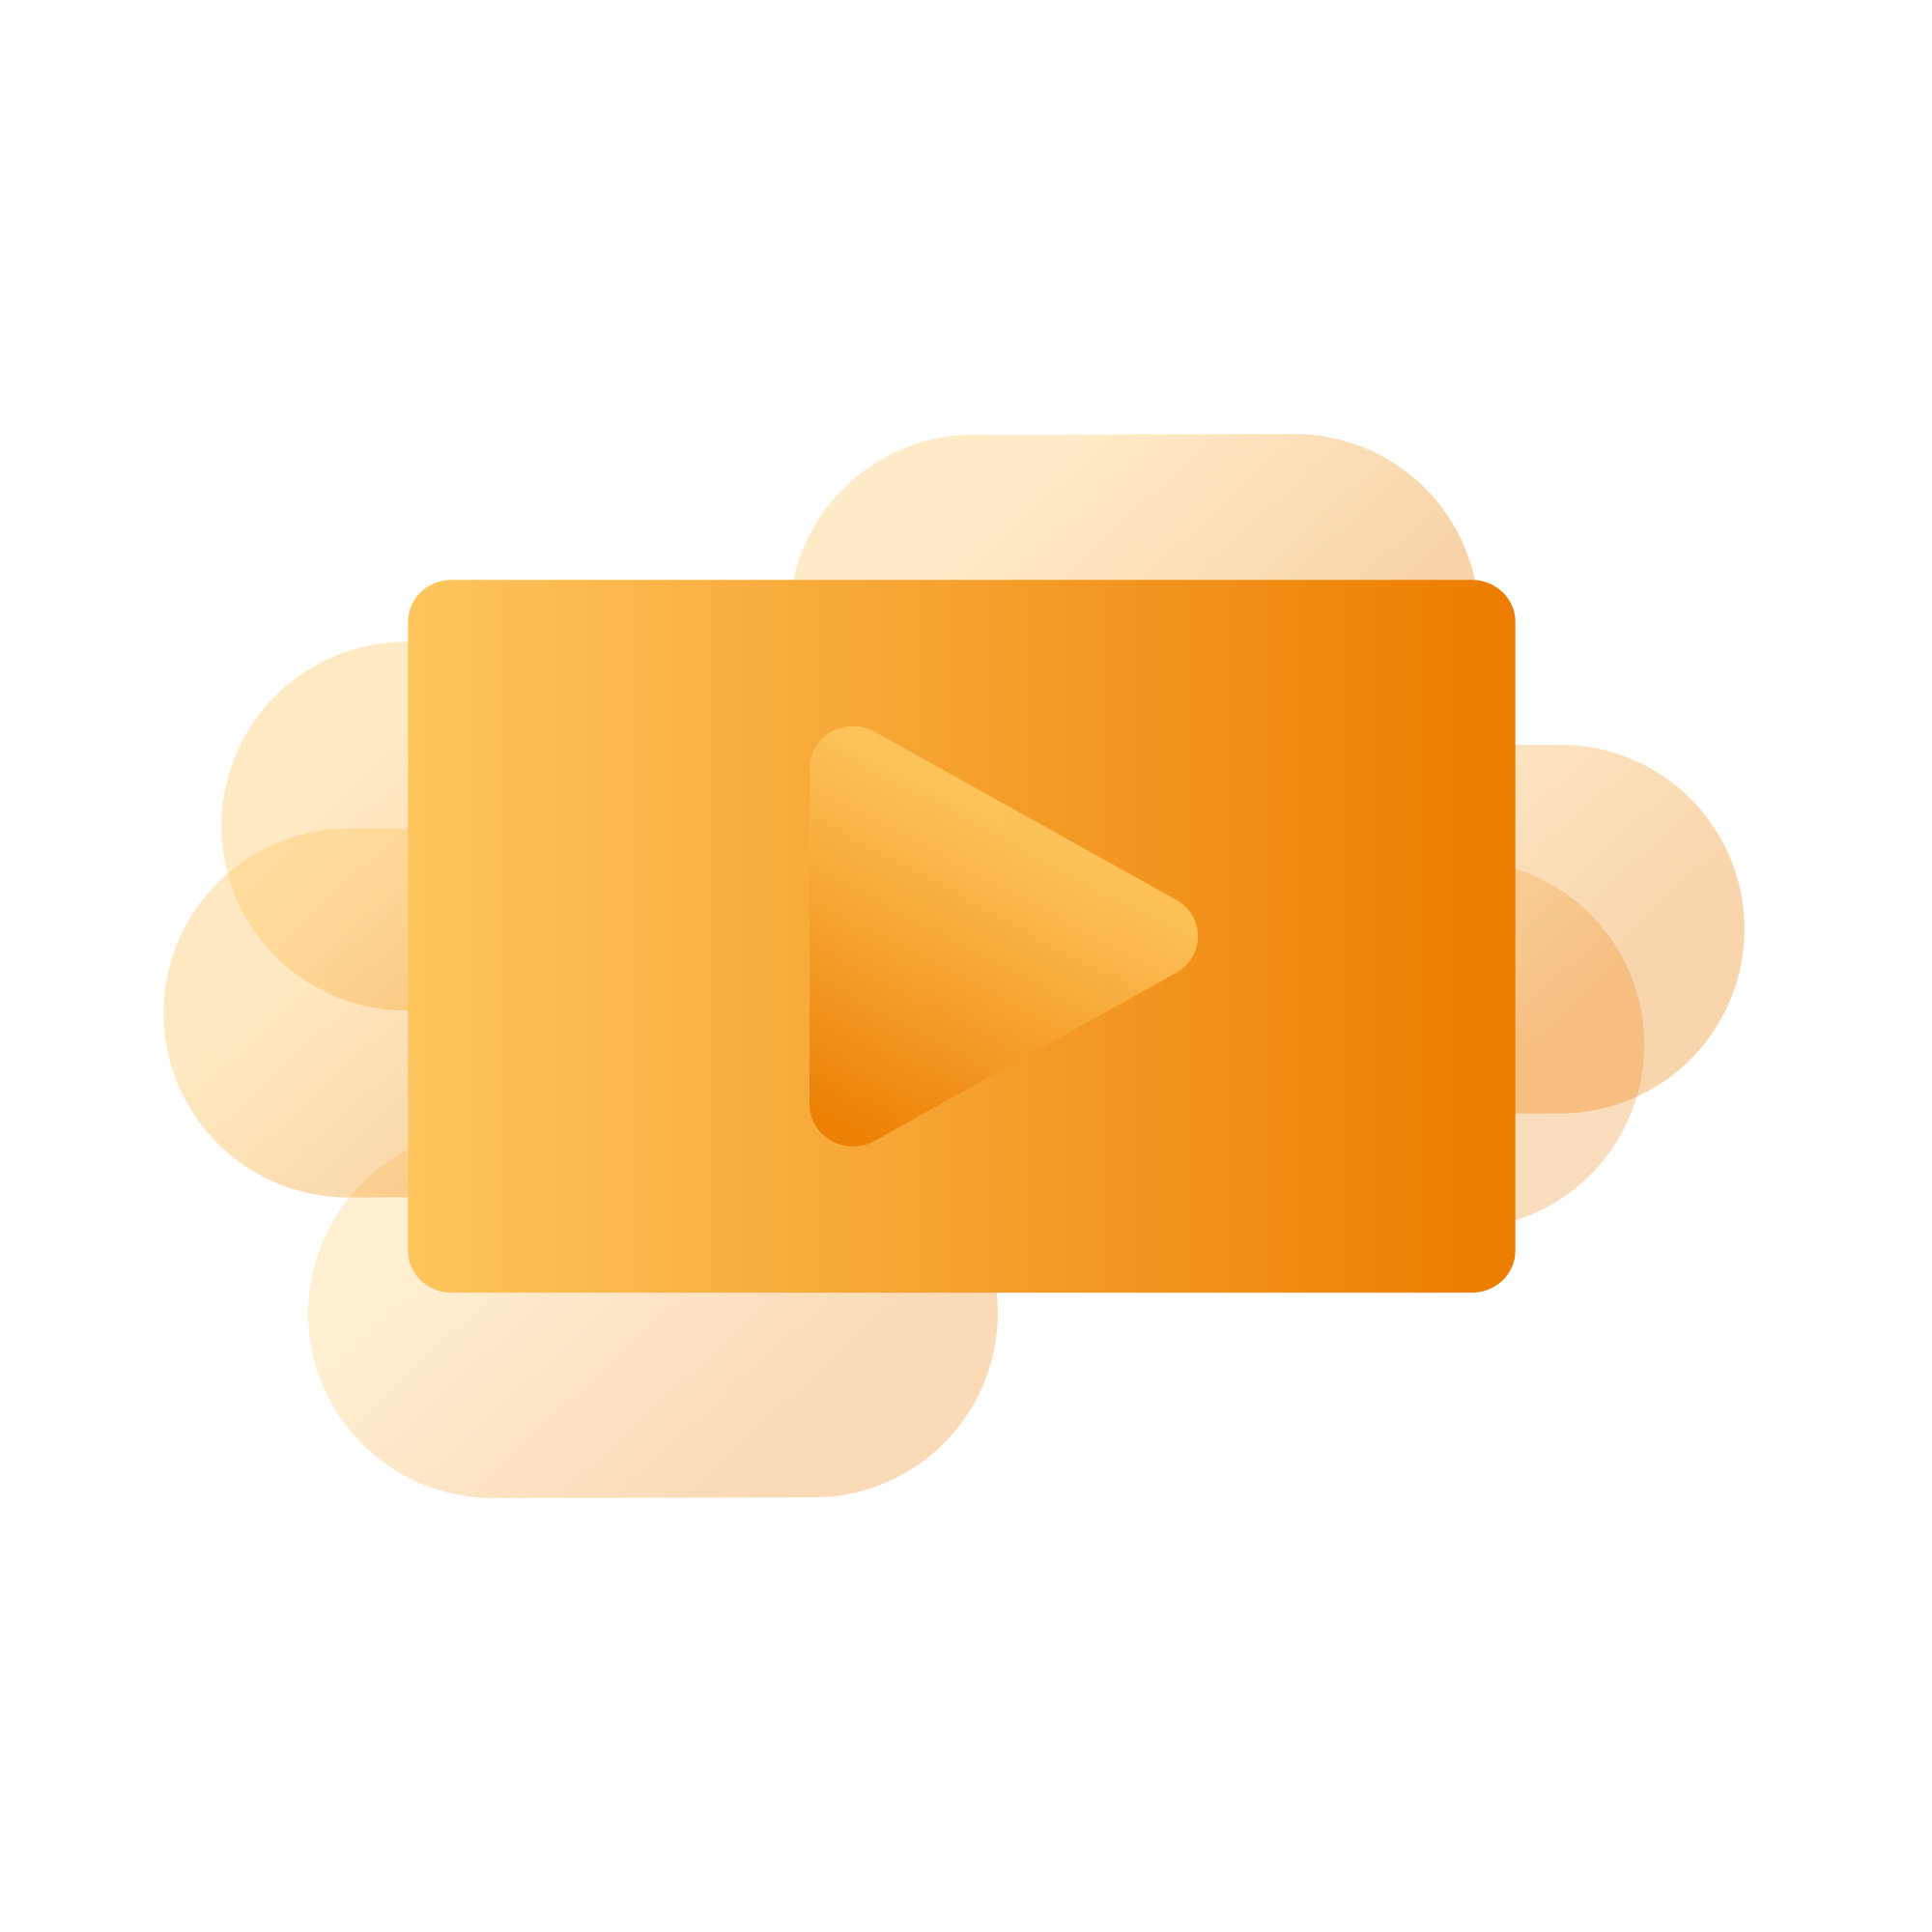 Trainobo: Die Plattform für Ihren Video-Content